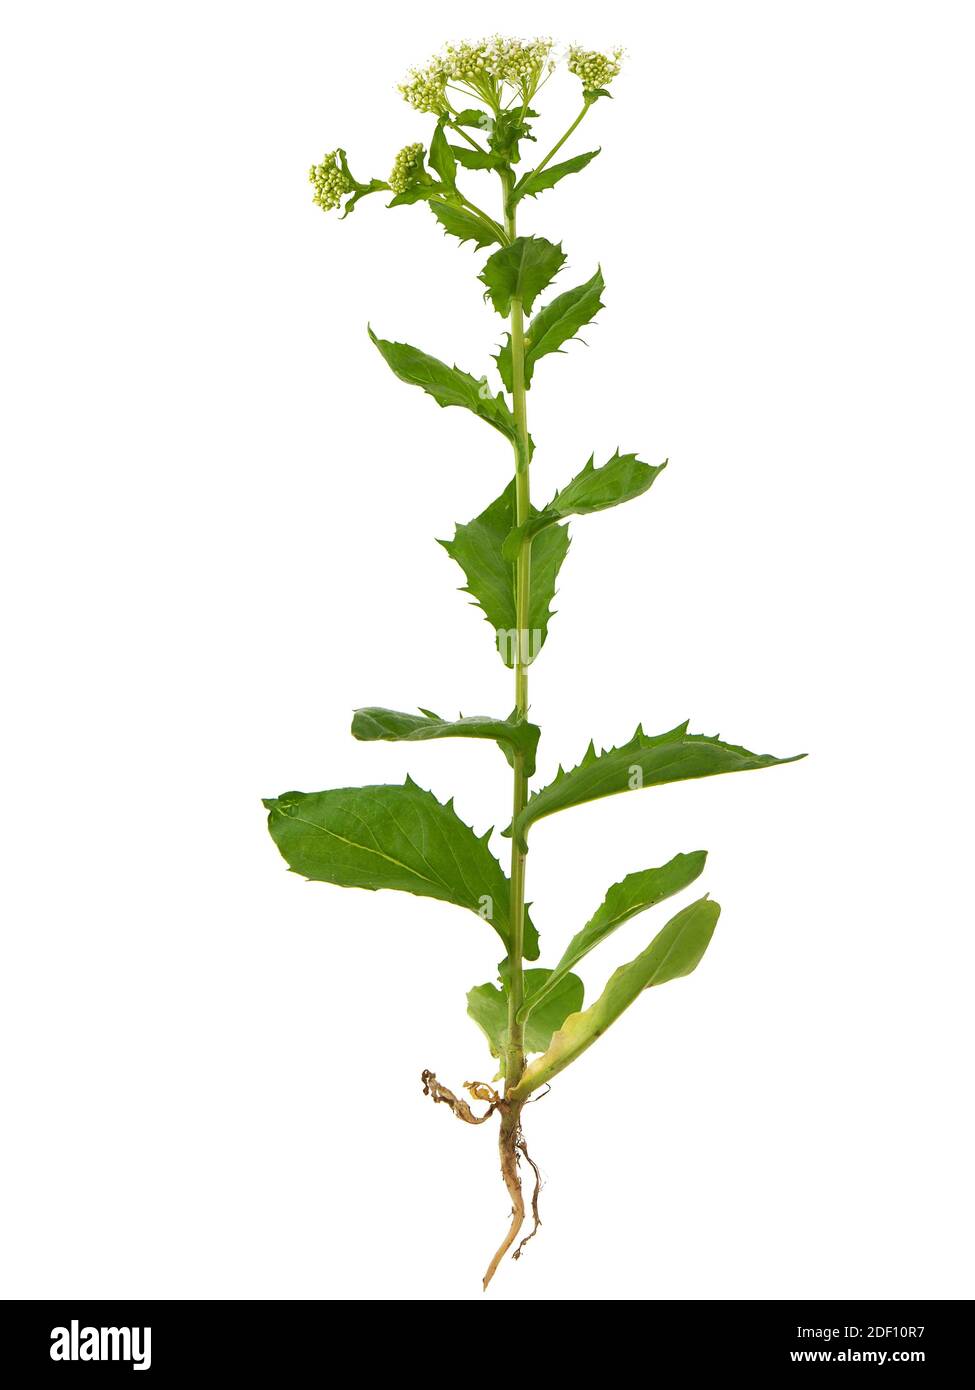 Whitetop or Hoary cress plant isolated on white, Lepidium draba Stock Photo